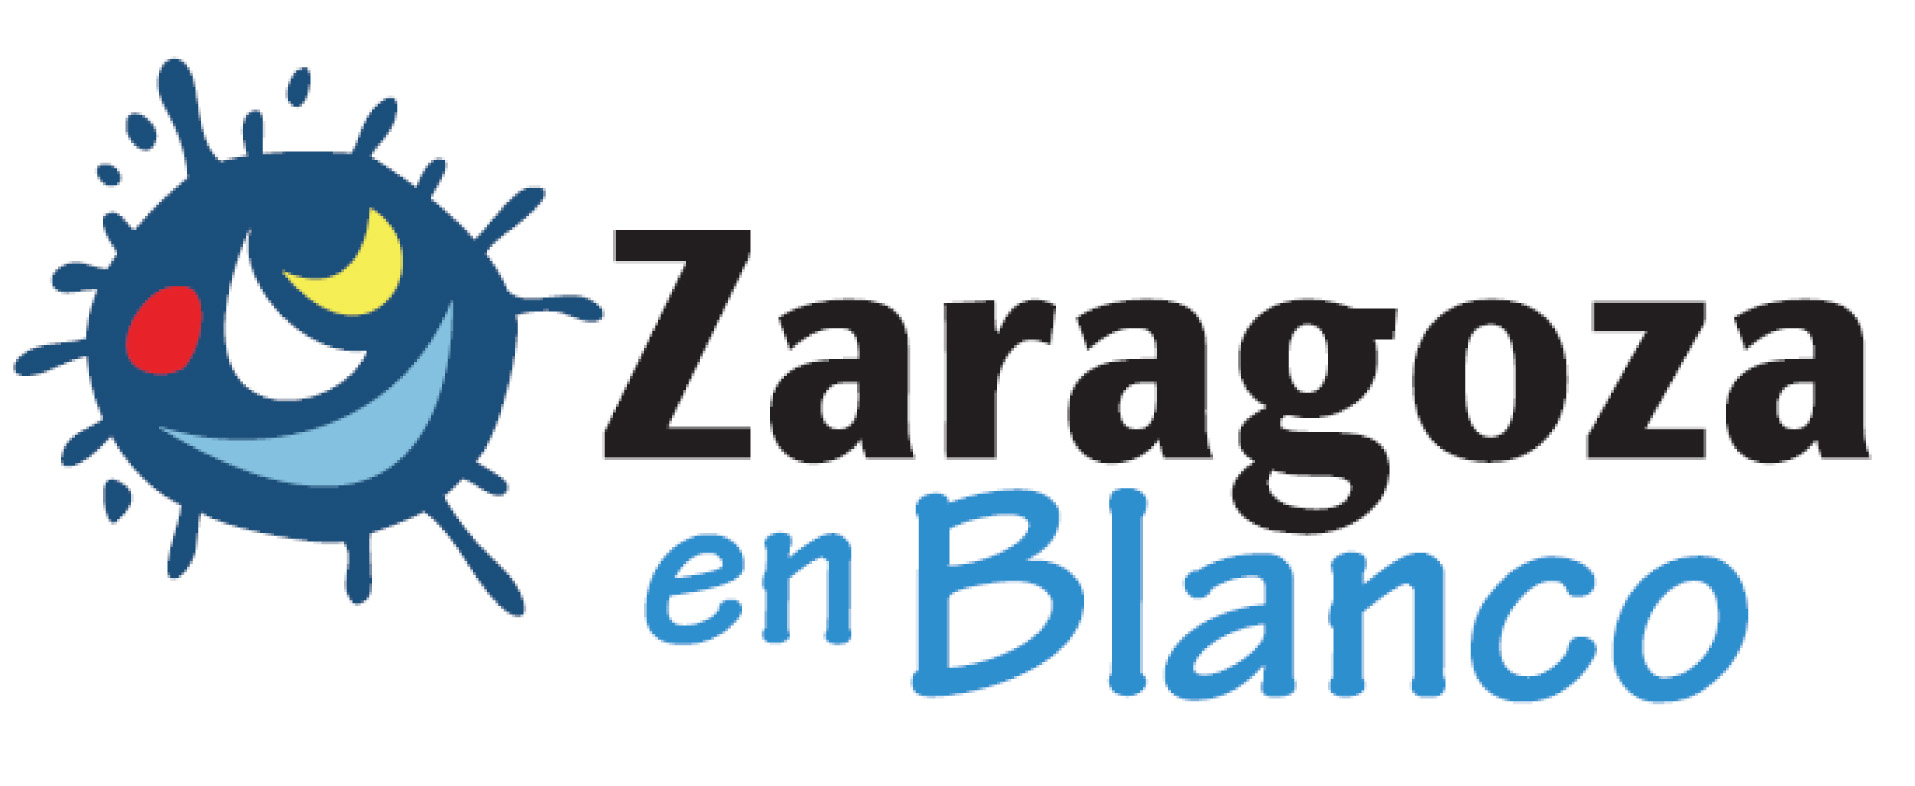 Zaragoza%20en%20Blanco-1.jpg